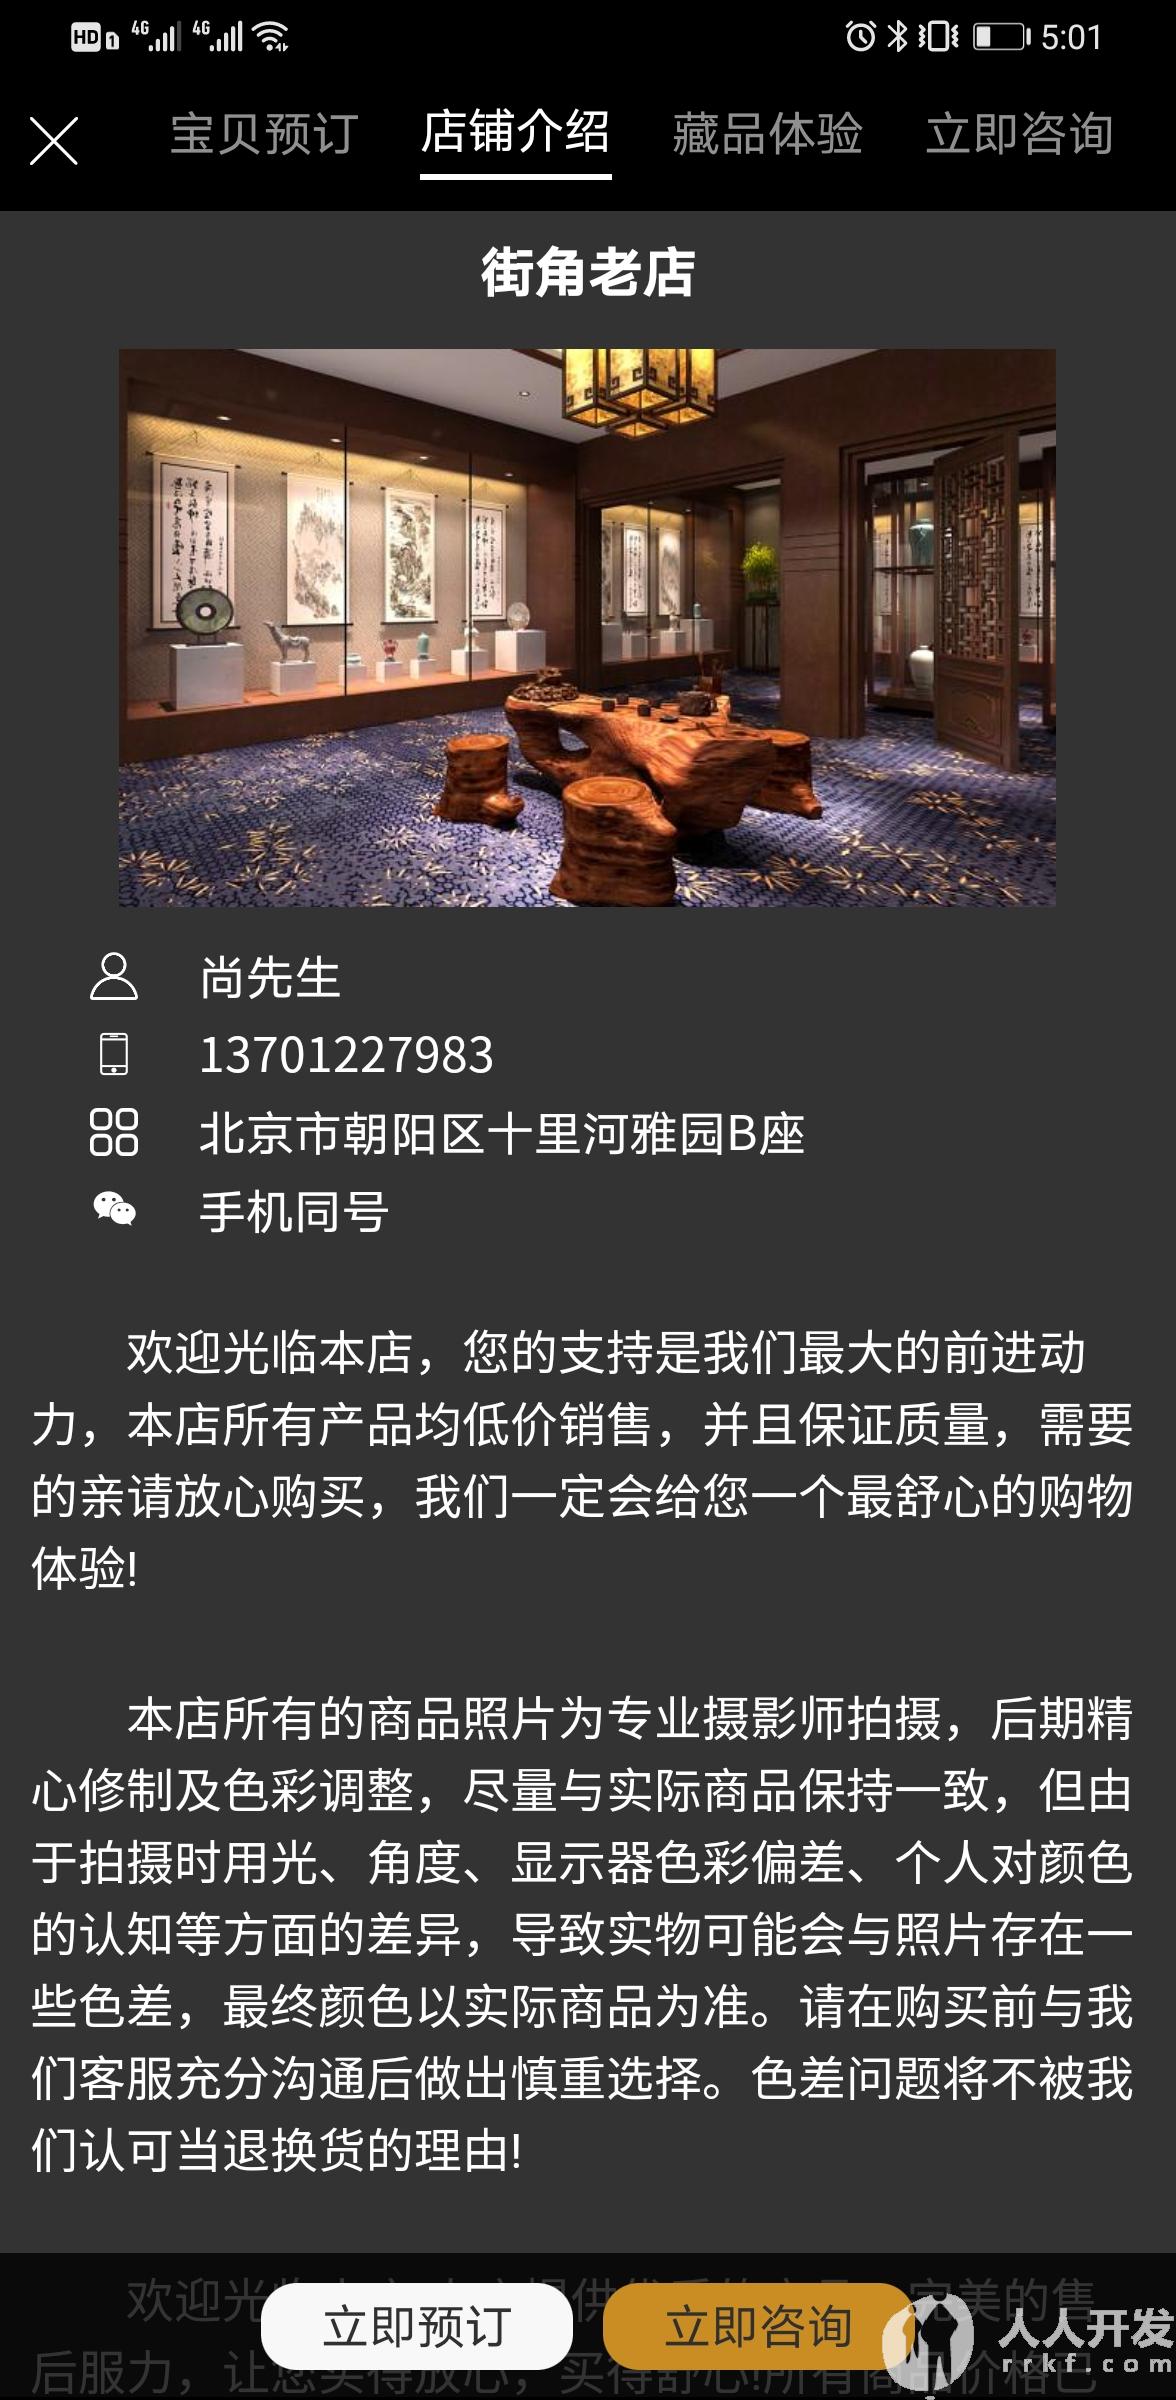 Screenshot 20210423 170150 com.yiyuanyoudao.app